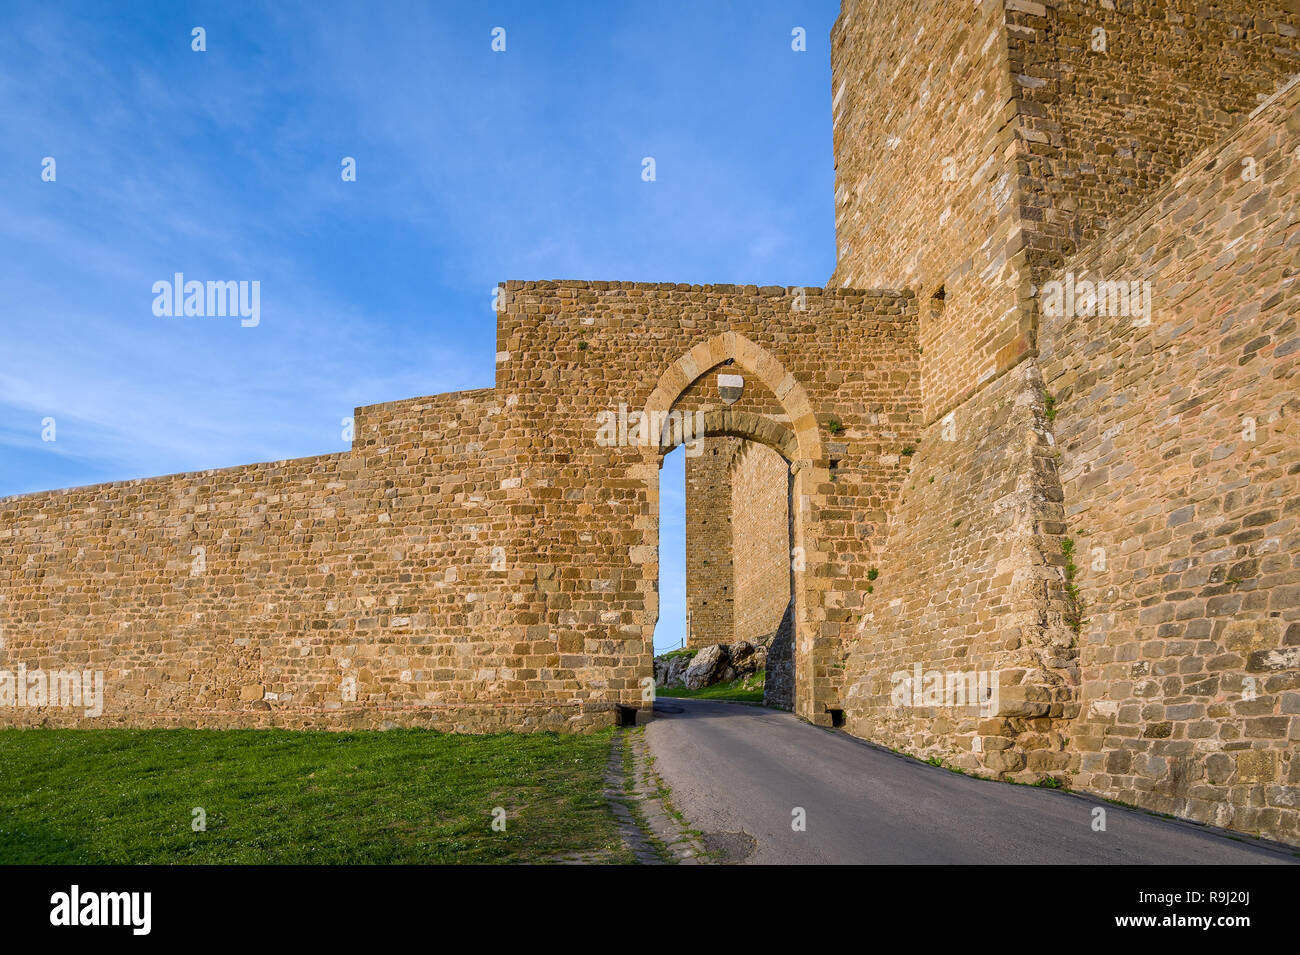 Gate to the Montalcino fortress - Toscana history landmark. Italy. Stock Photo